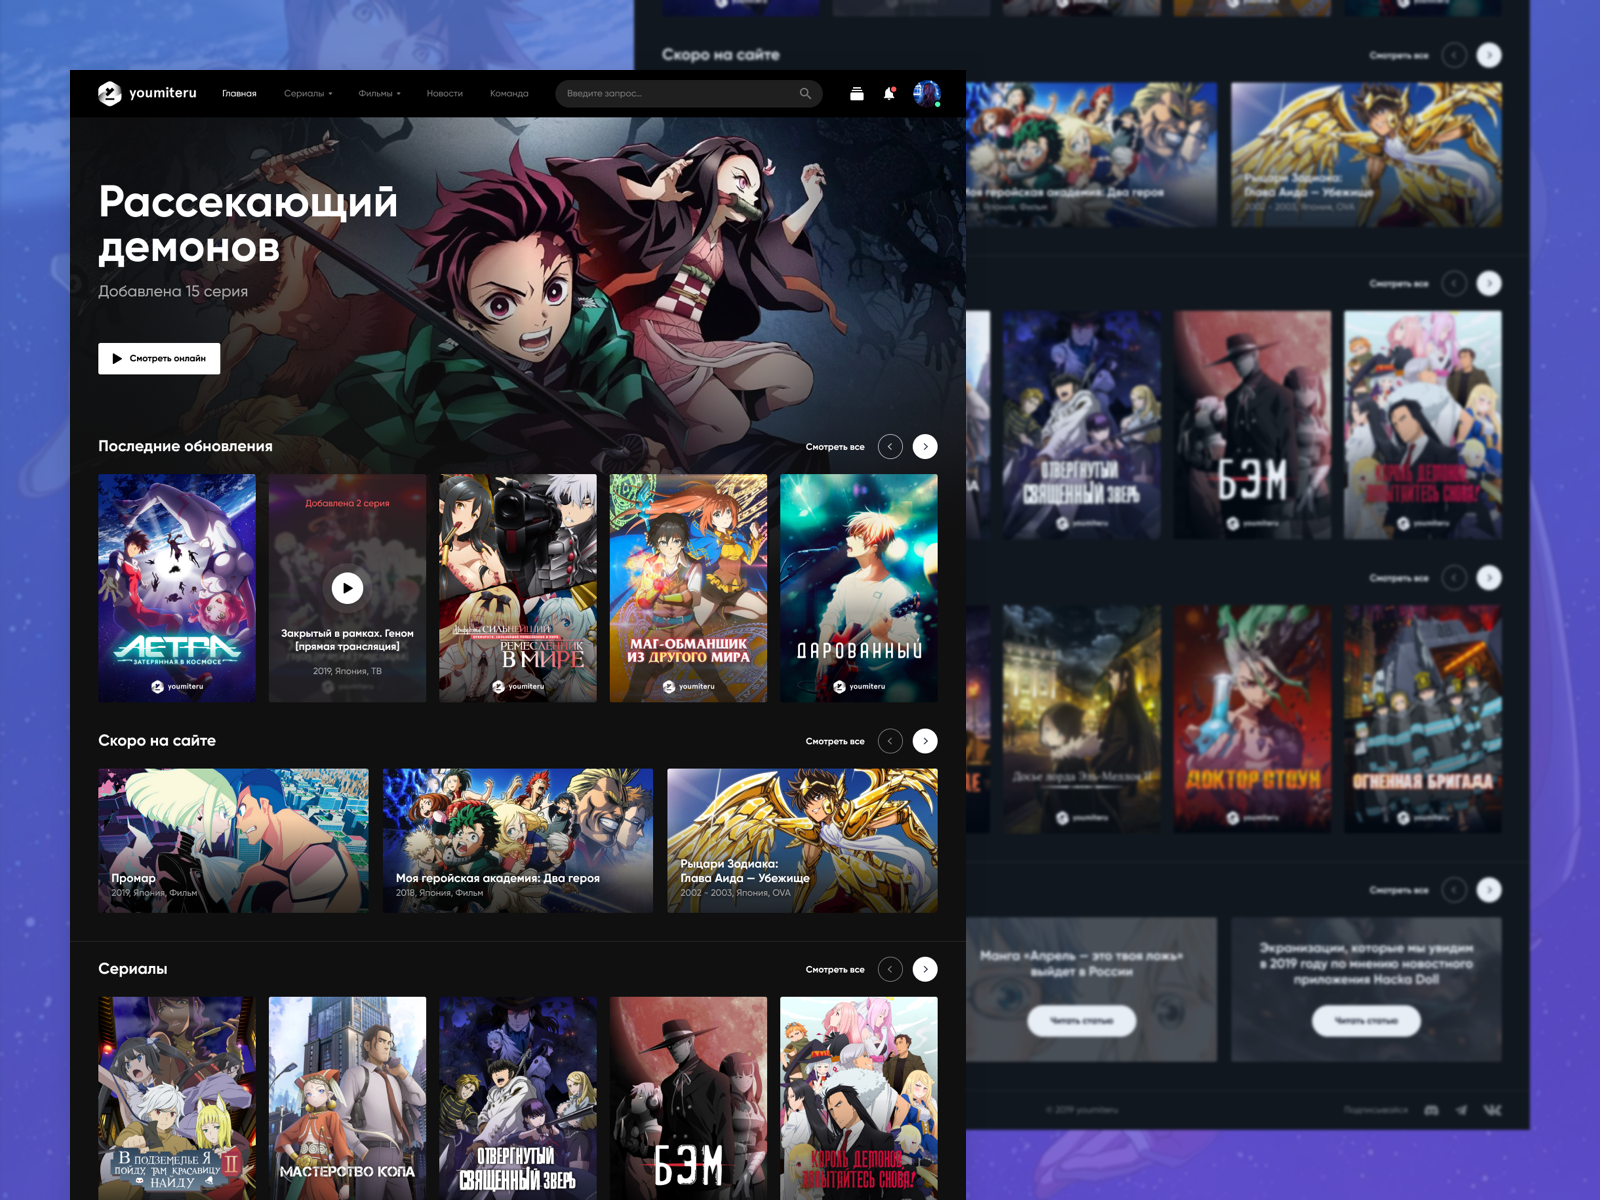 Anime Streaming Service Design by Nikita Zadvornijs on ...